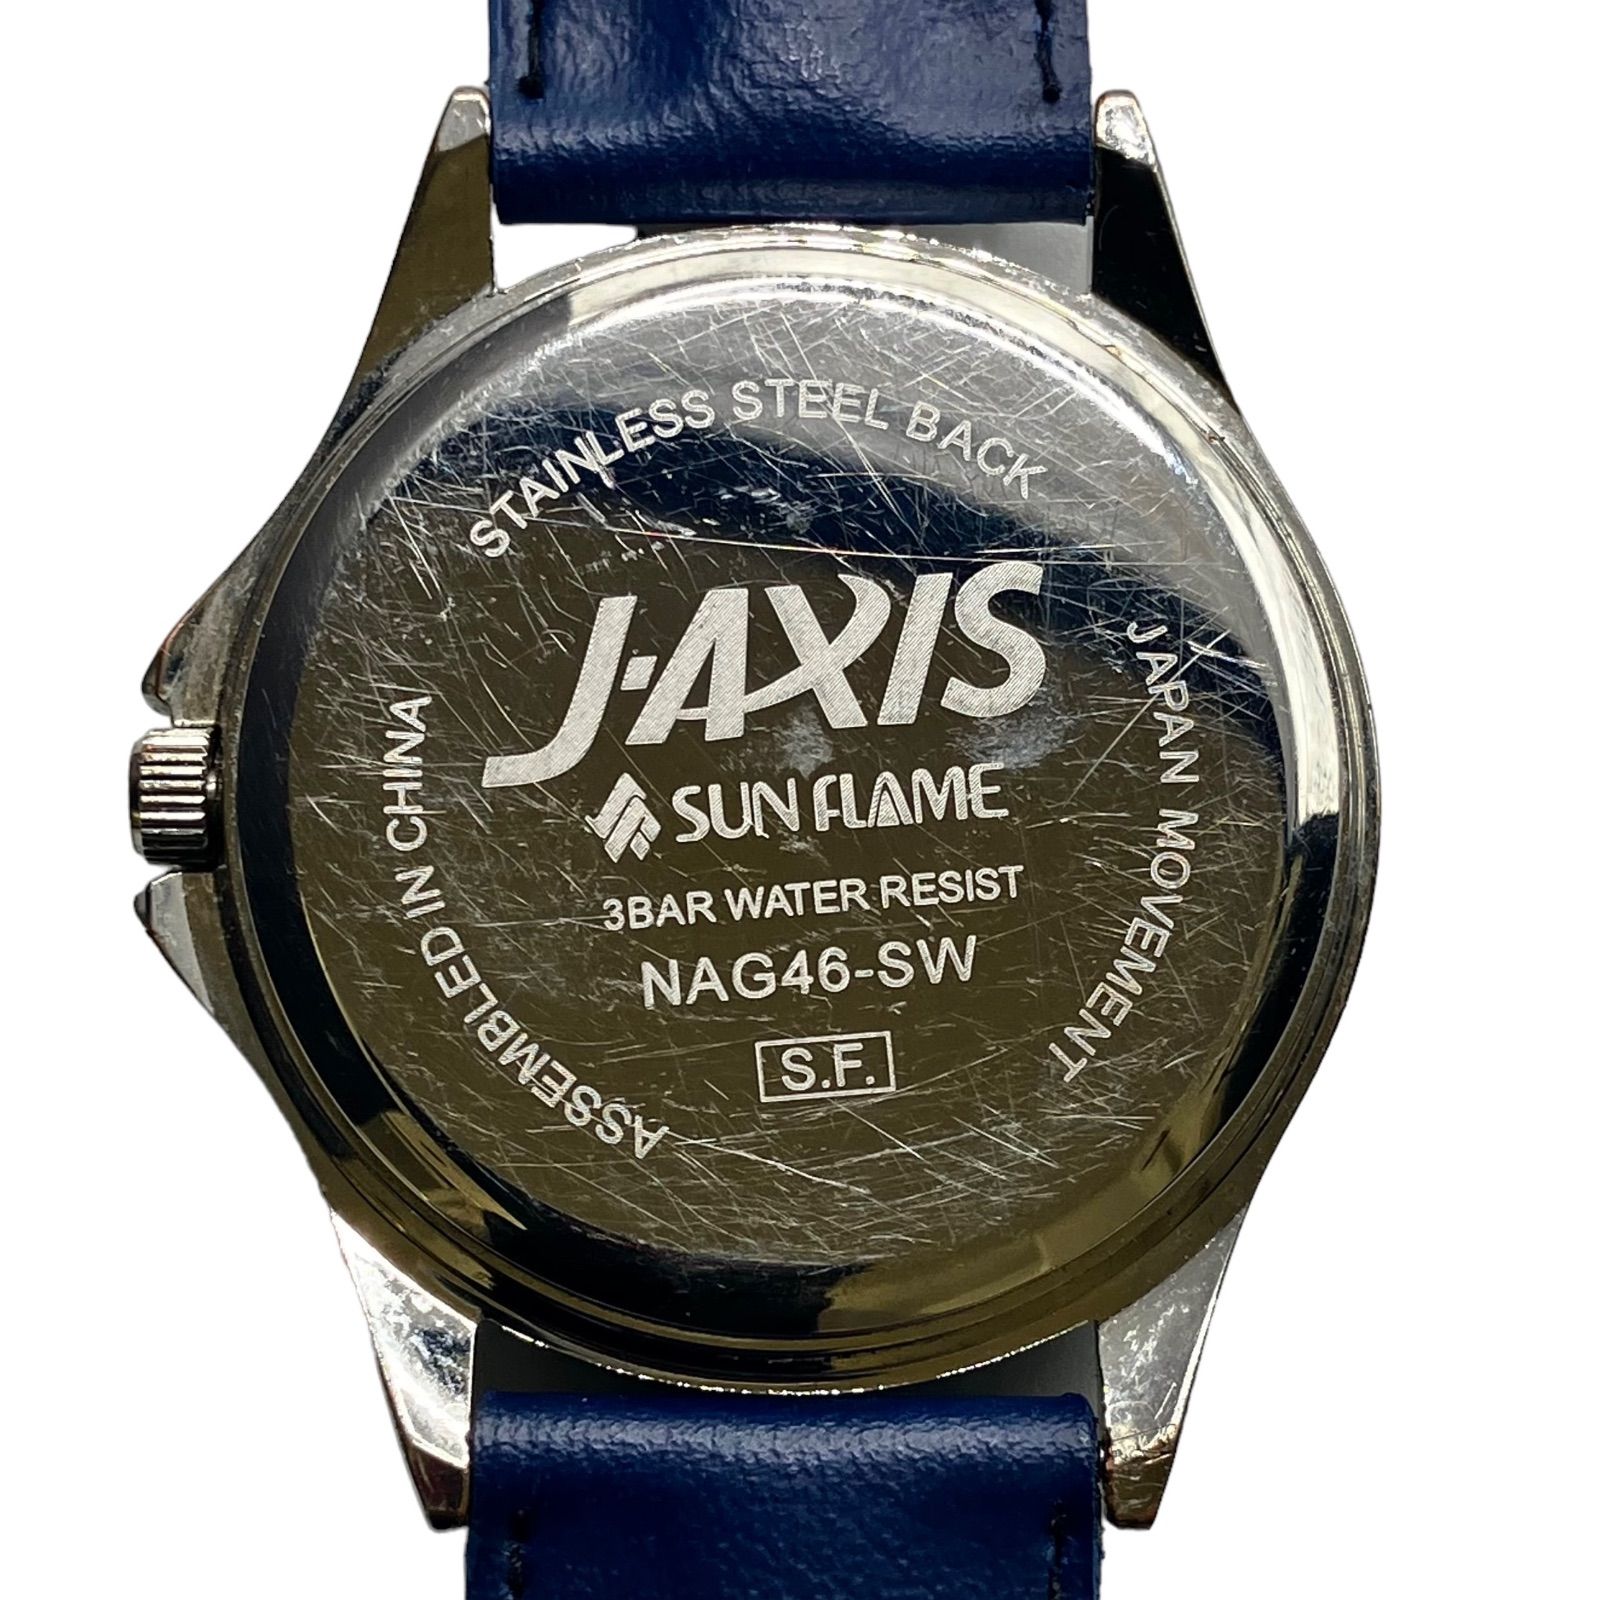 【きれいです ️サンフレイム】 Sun Flame メンズ腕時計 NAG46-SW J-AXIS (AYA)